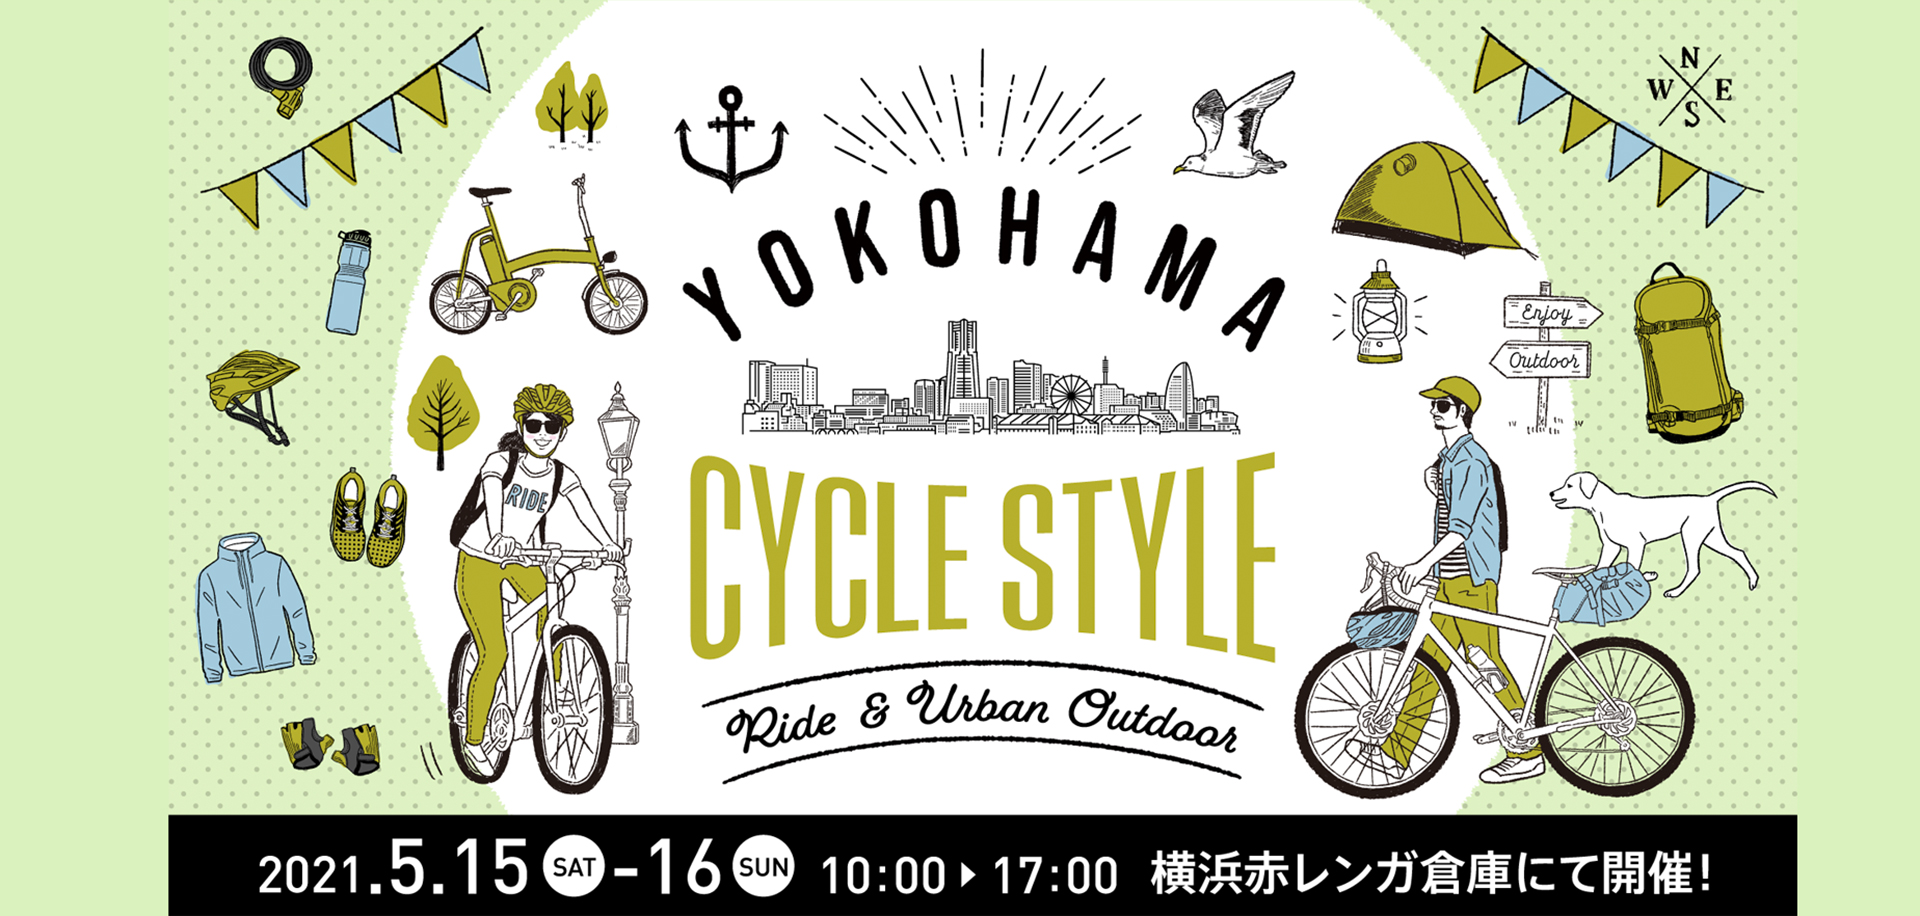 自転車イベント「ヨコハマ サイクルスタイル2021」